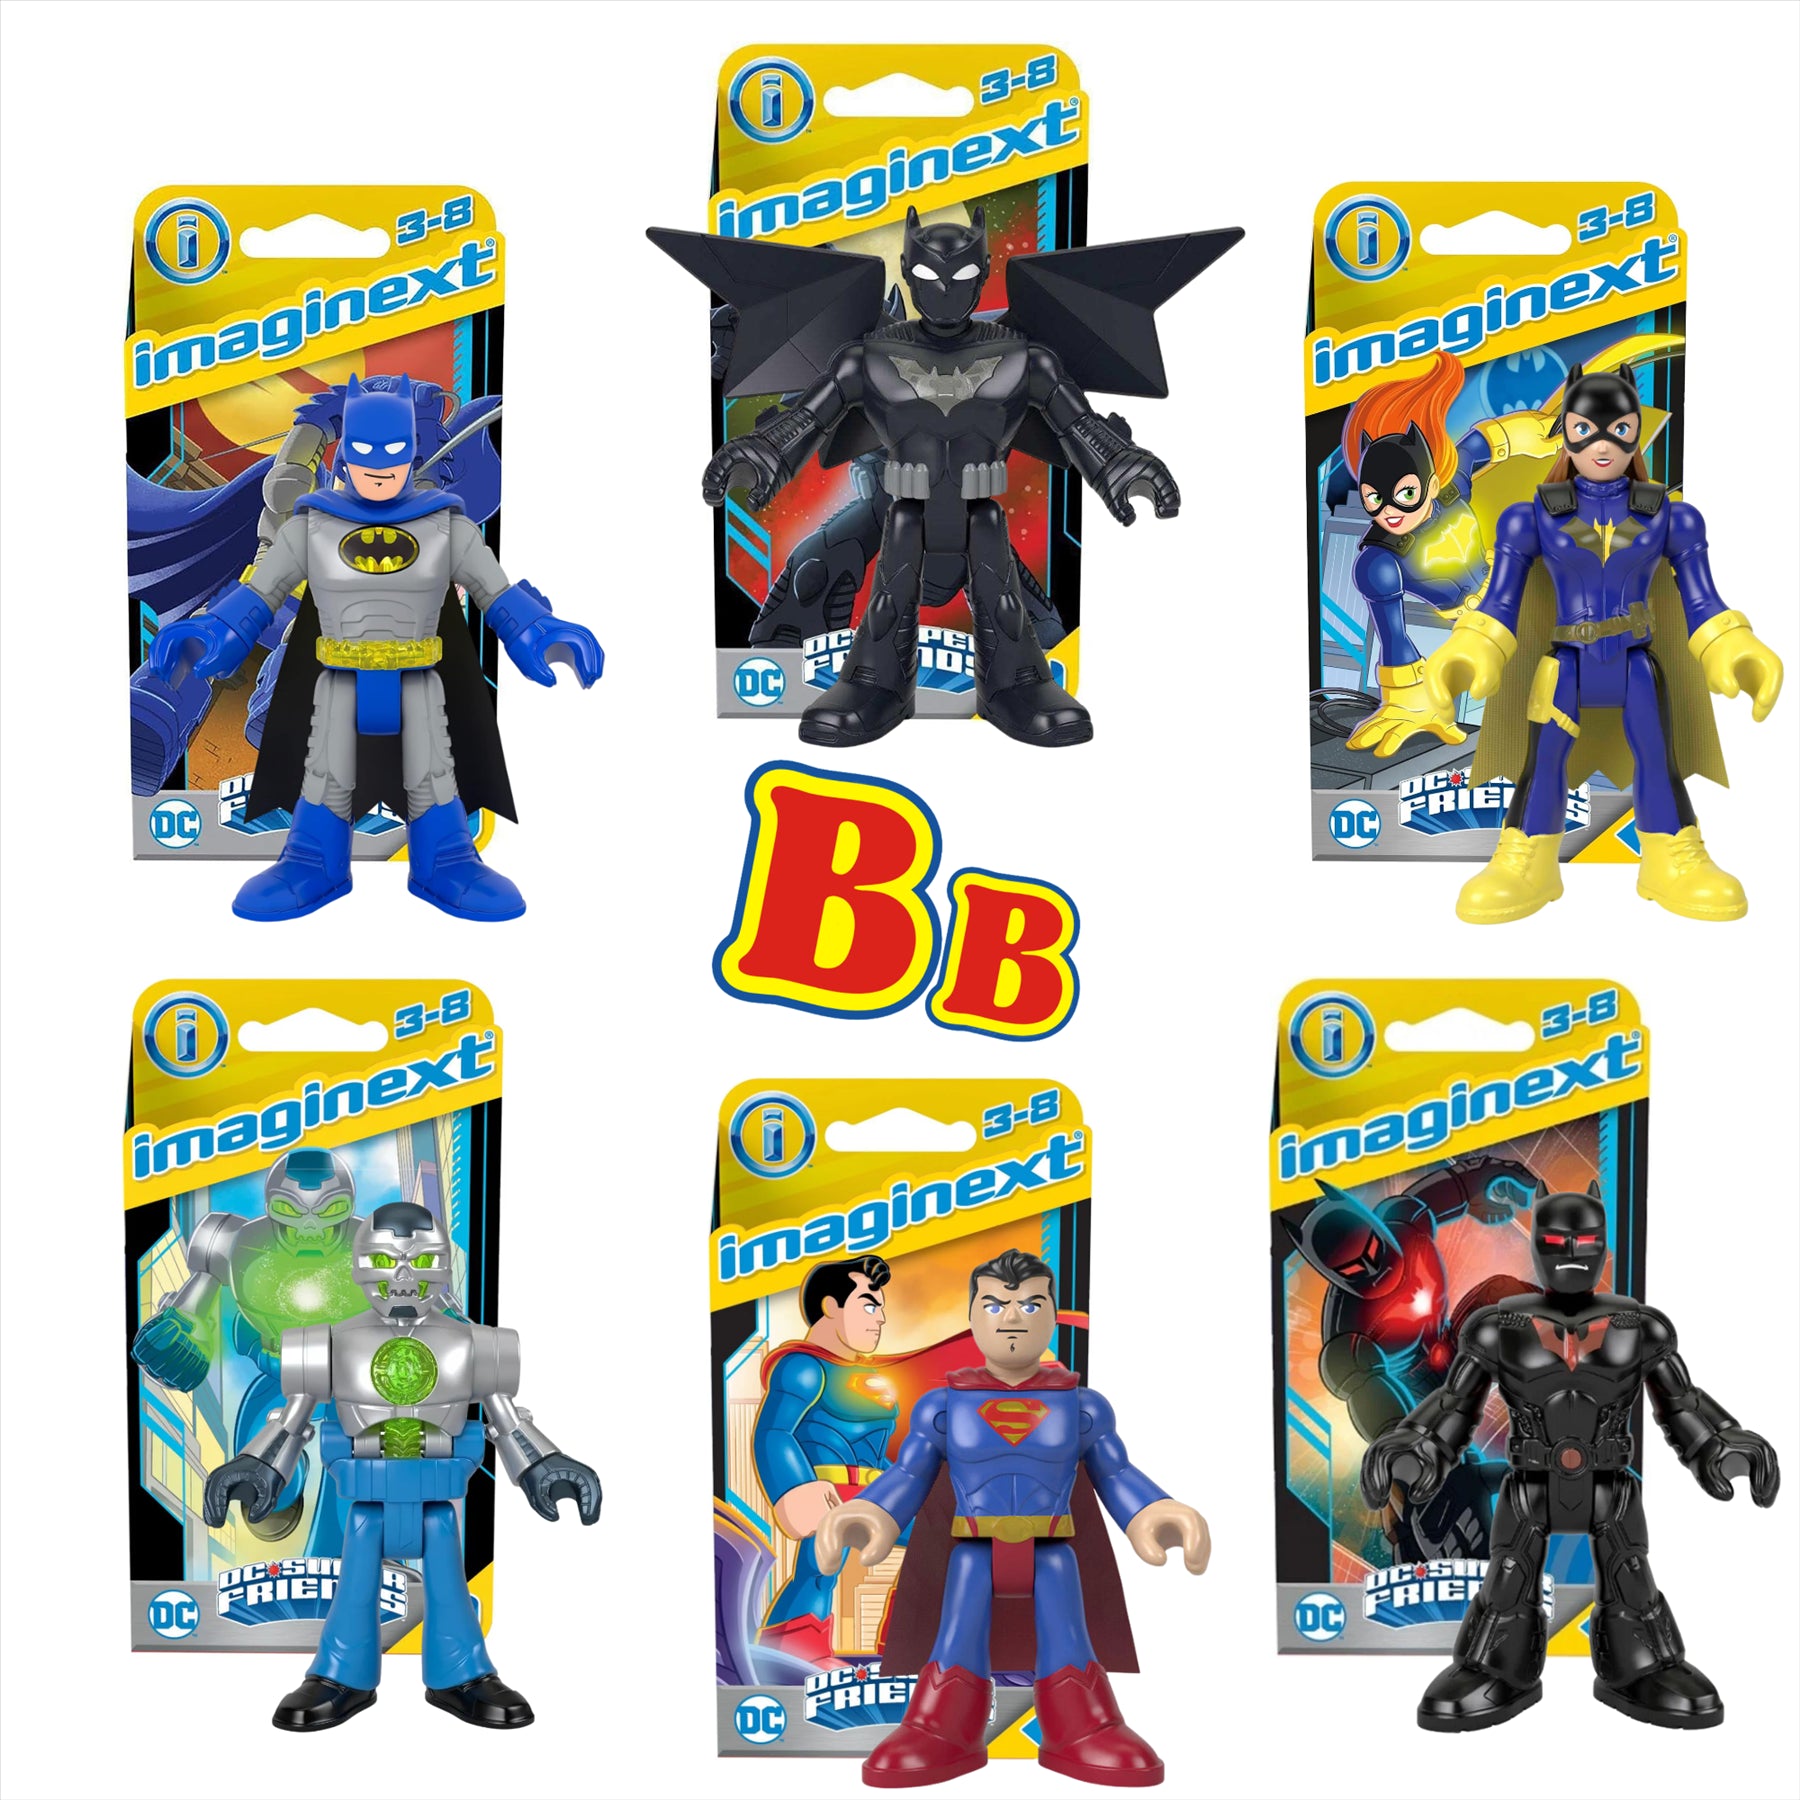 Imaginext DC Super Friends Miniature Action Figure Play Toys - Set of 6